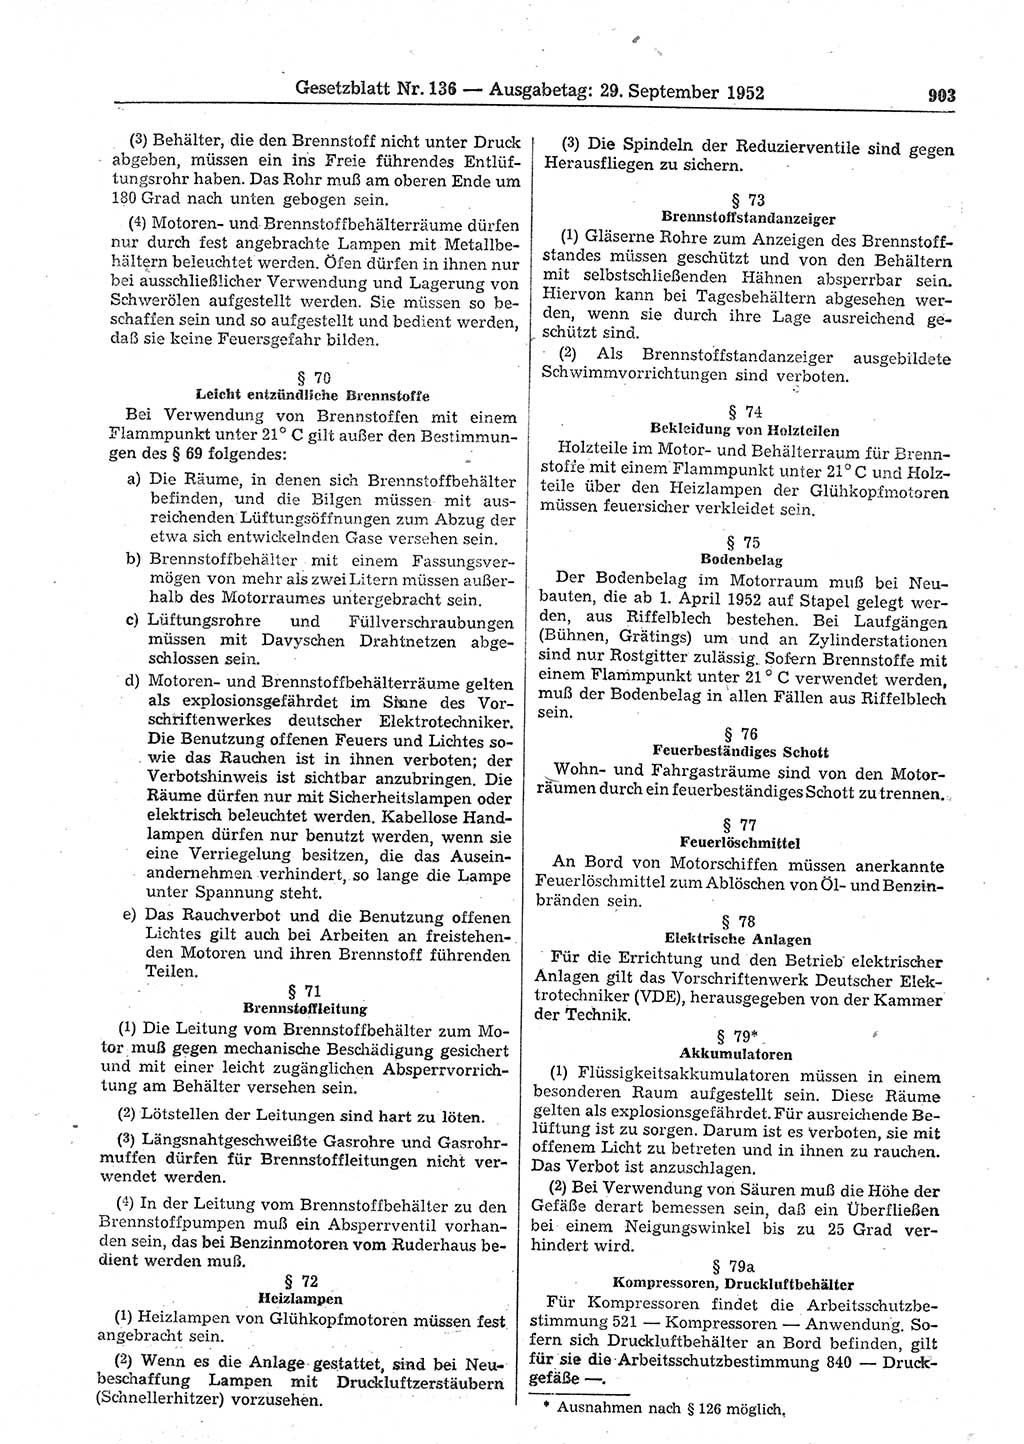 Gesetzblatt (GBl.) der Deutschen Demokratischen Republik (DDR) 1952, Seite 903 (GBl. DDR 1952, S. 903)